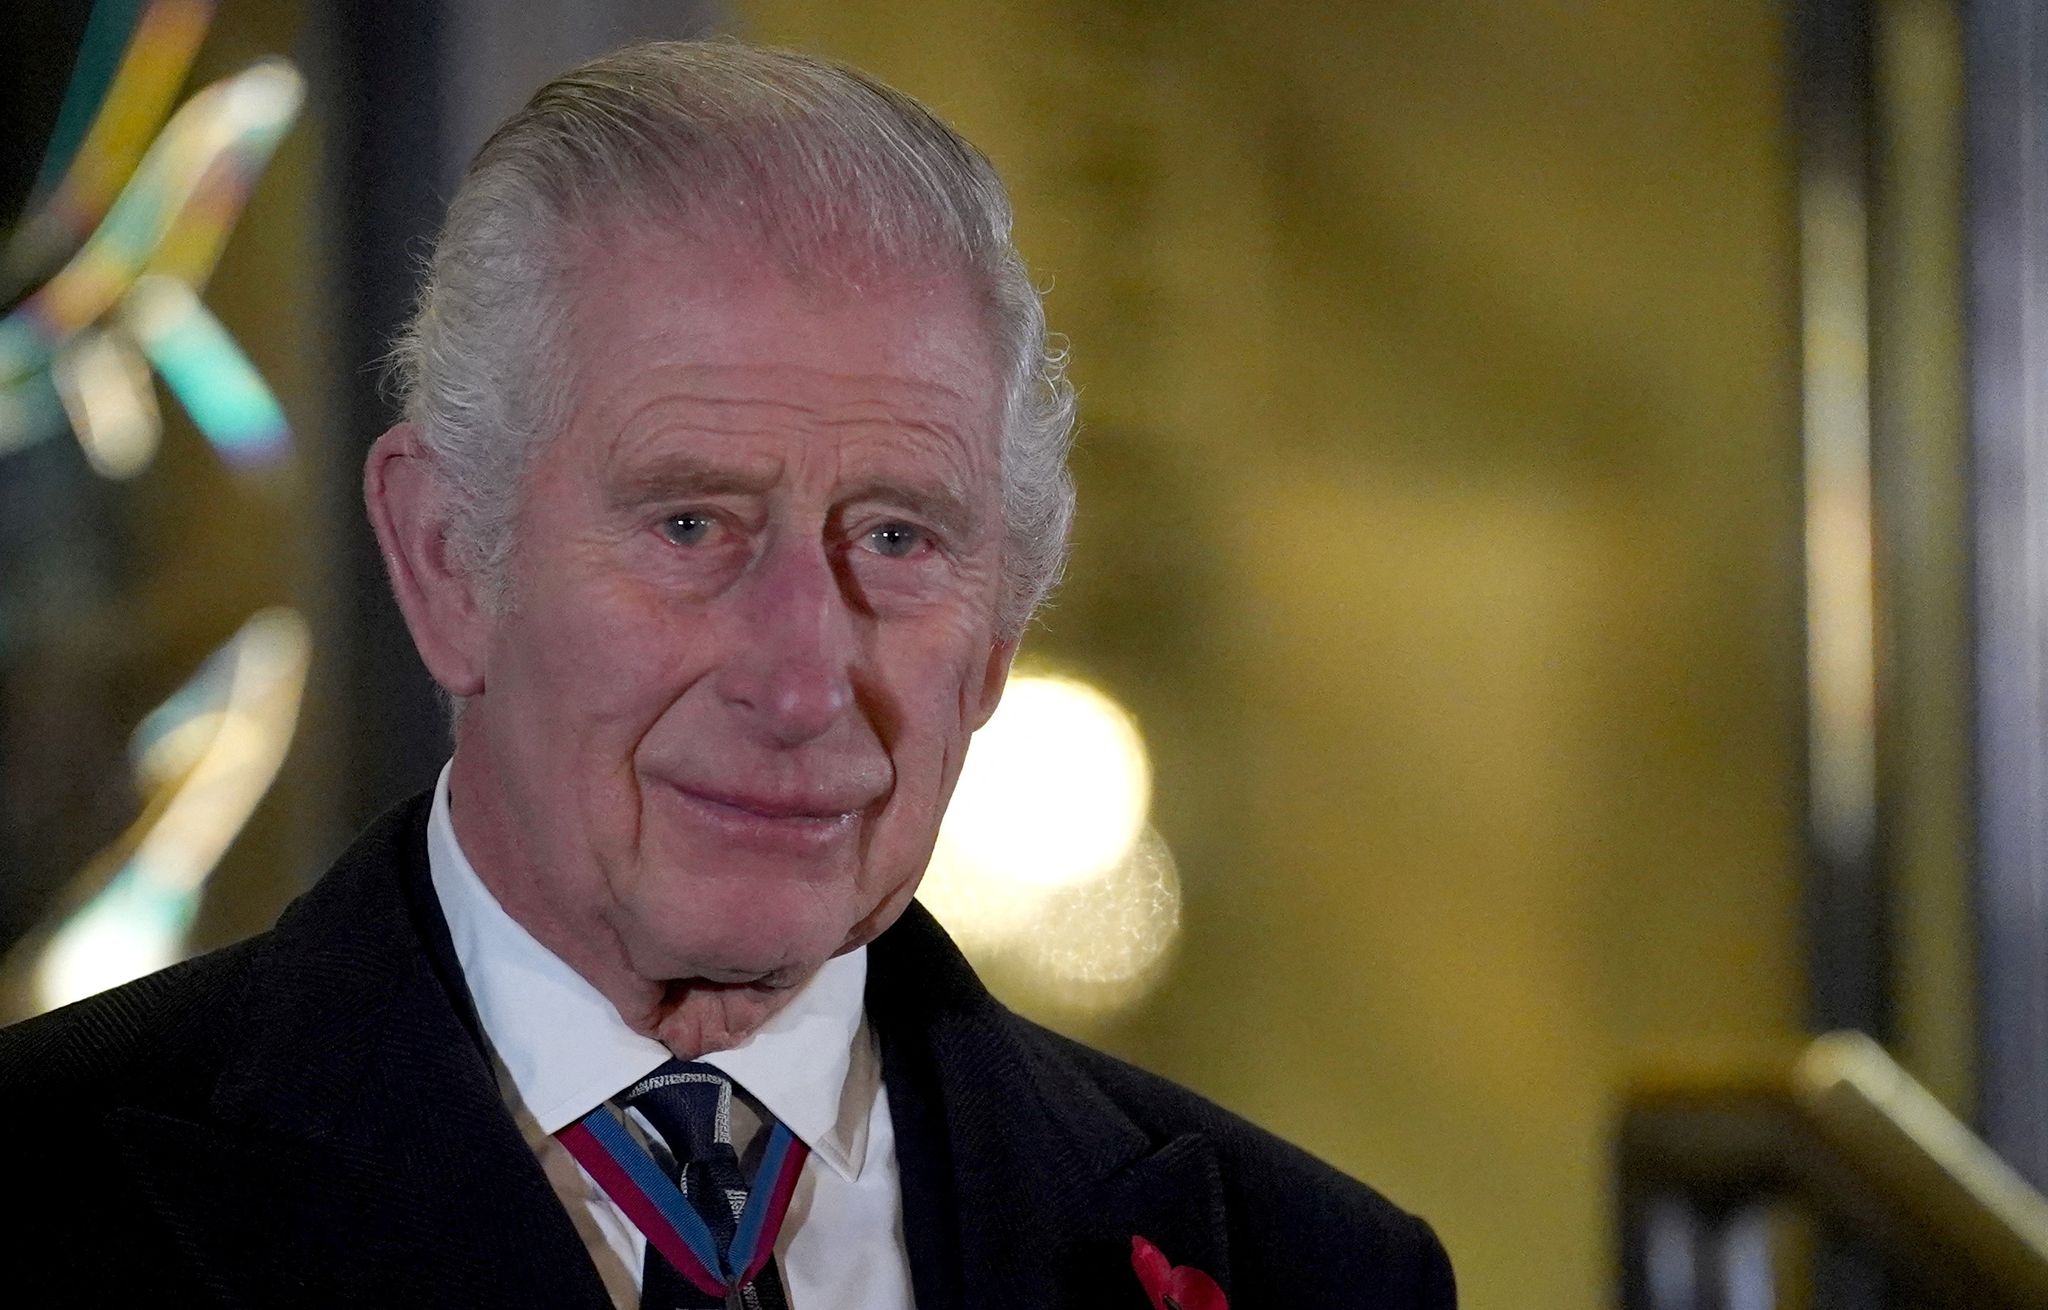 Nach der Krebsdiagnose wird König Charles III. zunächst keine öffentlichen Termine mehr wahrnehmen.